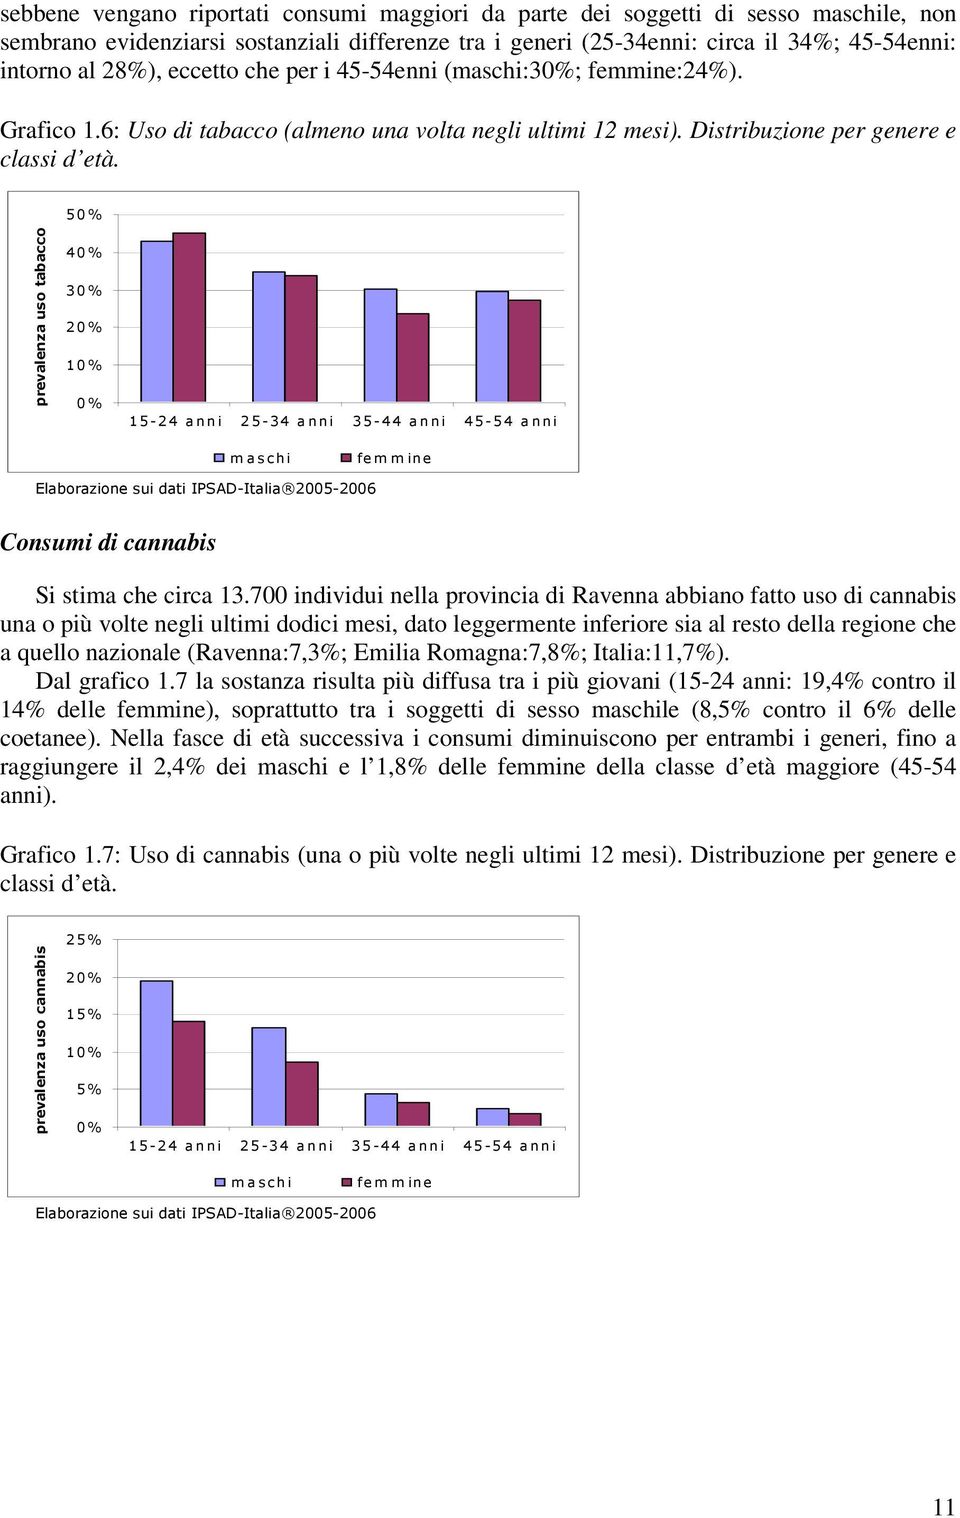 50% prevalenza uso tabacco 40% 30% 20% 10% 0% 15-24 a nni 25-34 a nni 35-44 a nni 45-54 a nni m a schi fe m m ine Elaborazione sui dati IPSAD-Italia 2005-2006 Consumi di cannabis Si stima che circa